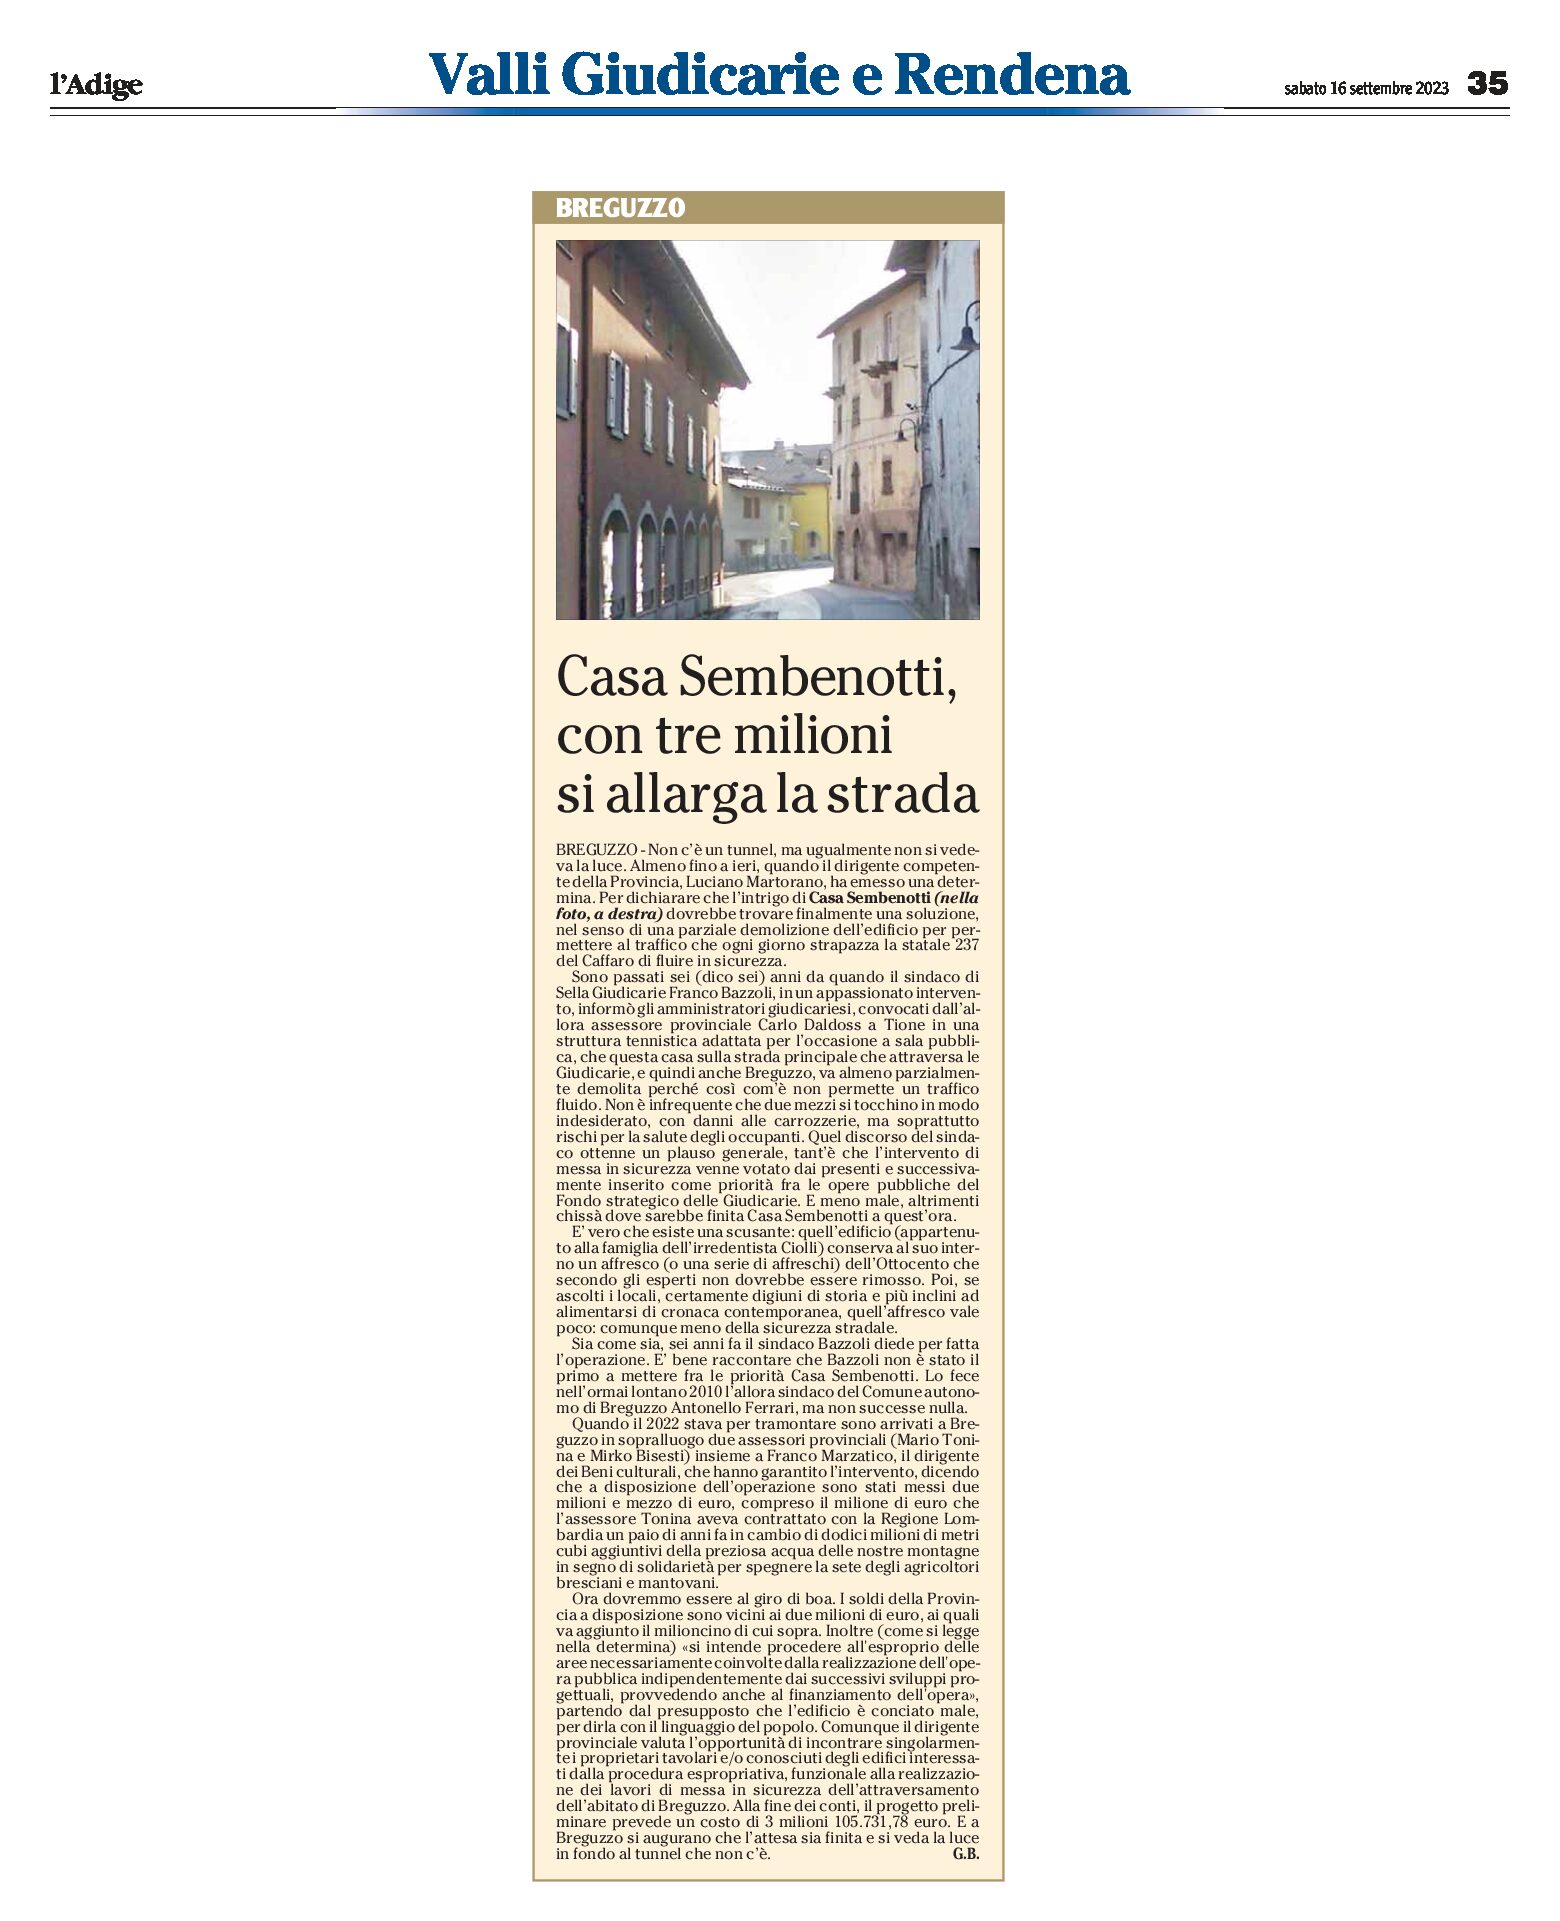 Breguzzo: Casa Sembenotti, con tre milioni si allarga la statale 237 del Caffaro